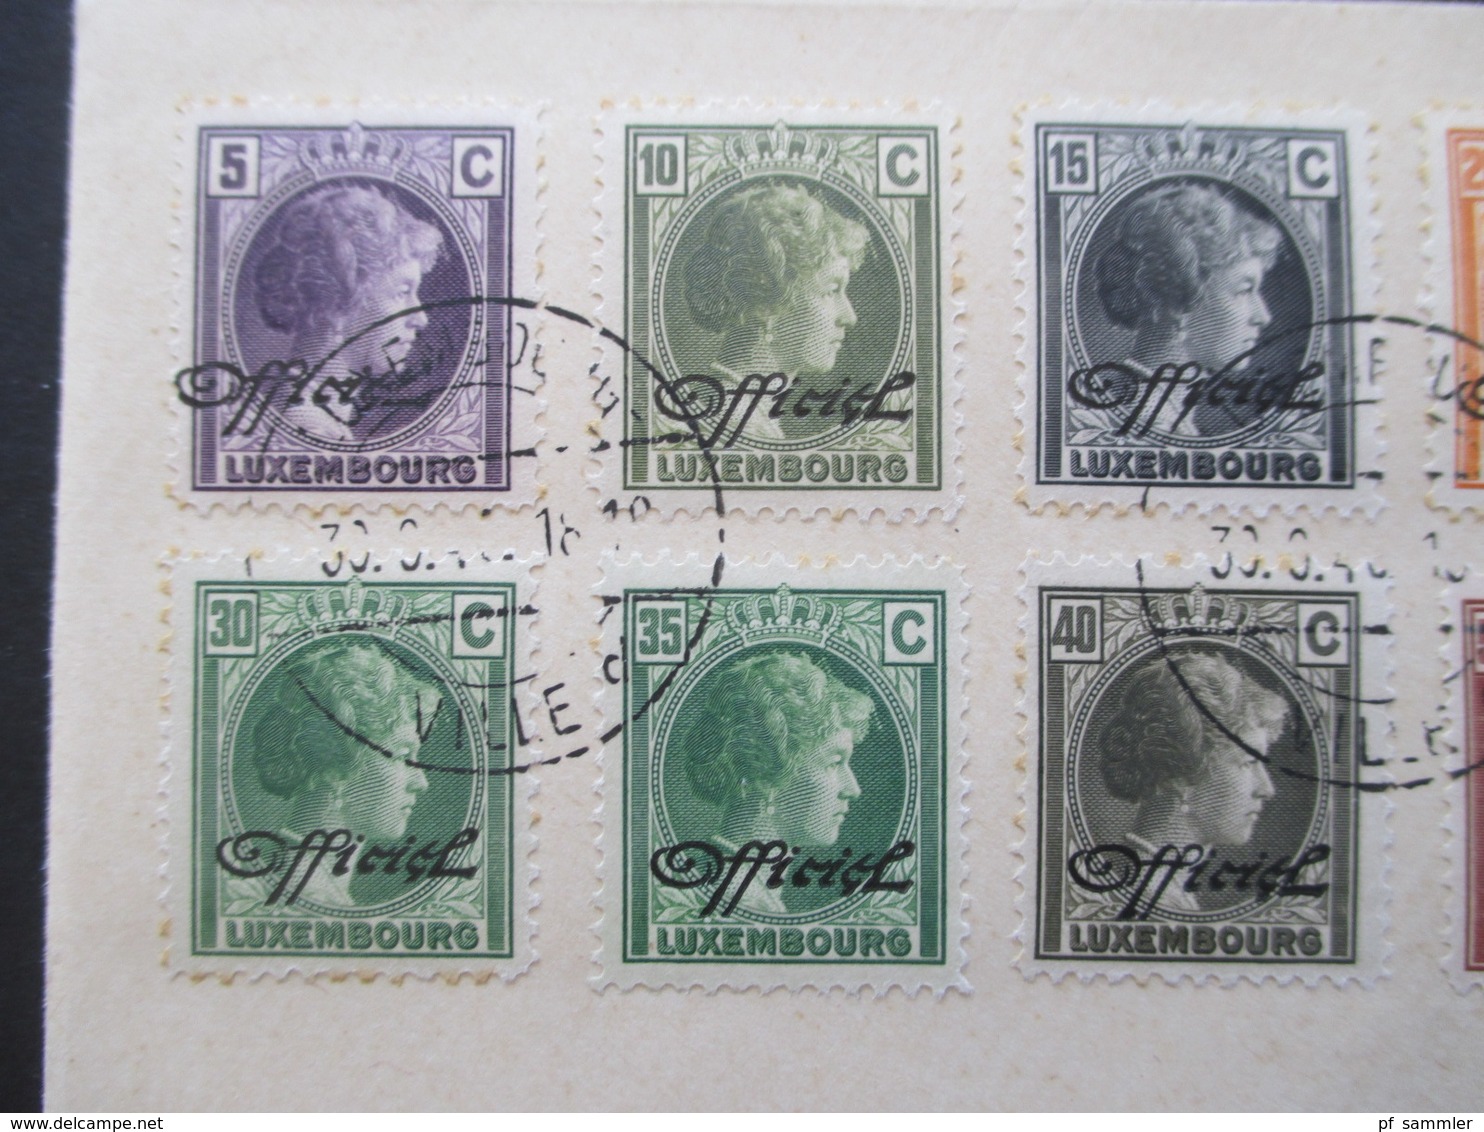 Luxemburg 1940 Dienstmarken Freimarken Mit Aufdruck Officiel 18 Werte Auf 2 Blano Umschlägen 5 Cent - 1 3/4 Fr. - Dienst